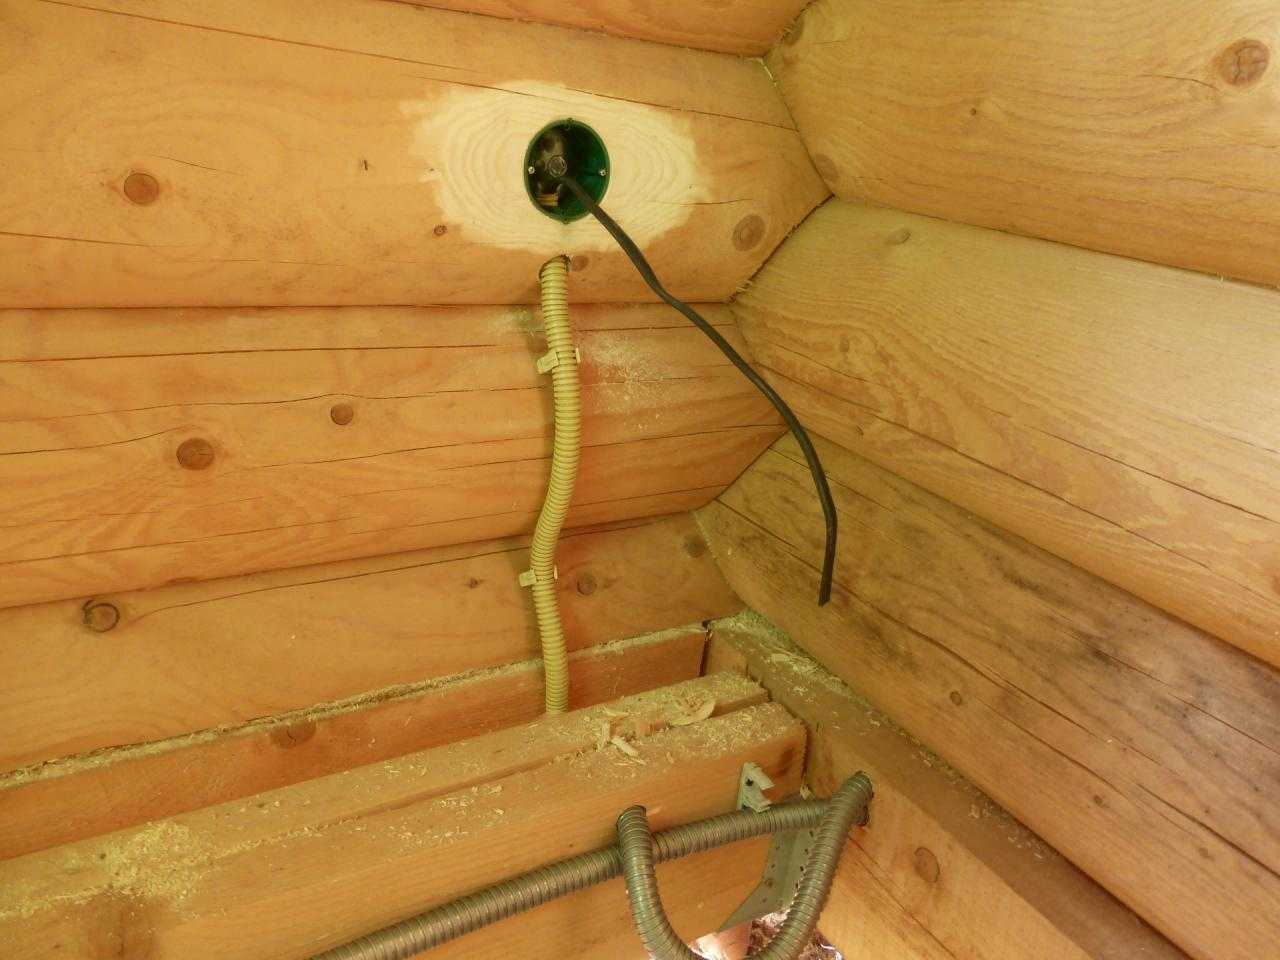 Проводка в деревянном доме своими руками - пошаговая инструкция